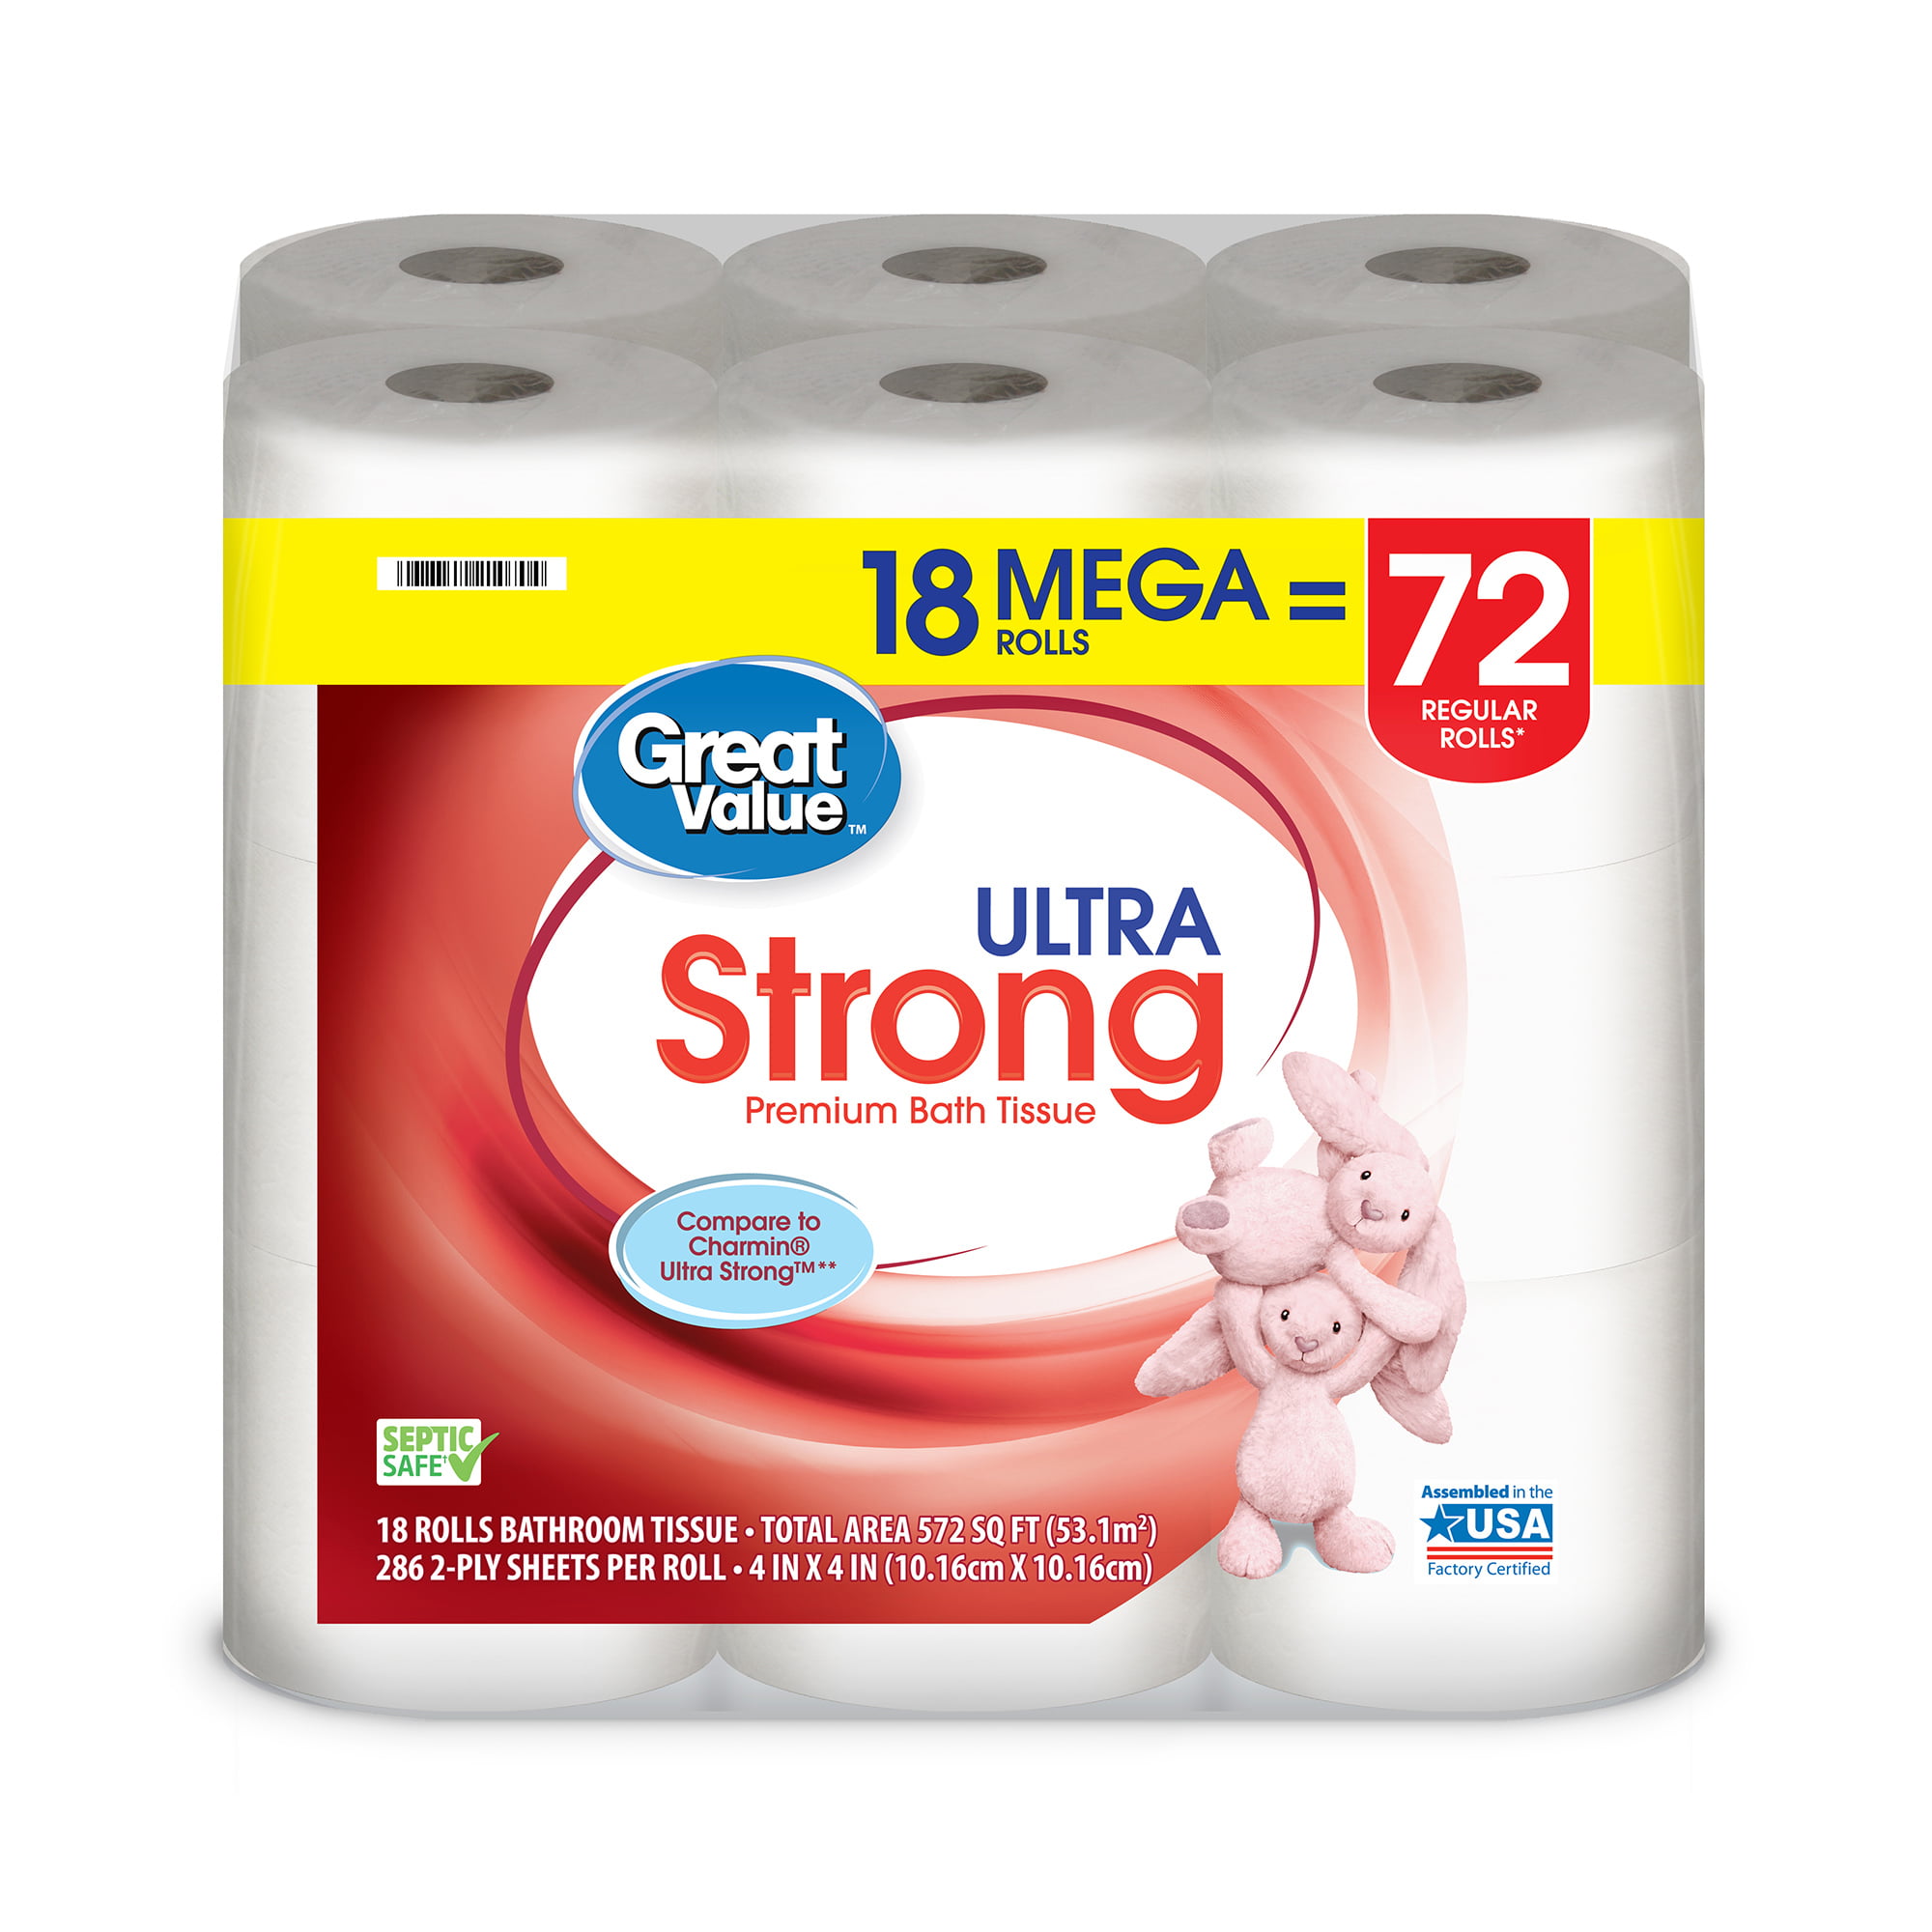 Great Value Ultra Strong Toilet Paper, 18 Mega Rolls - Walmart.com